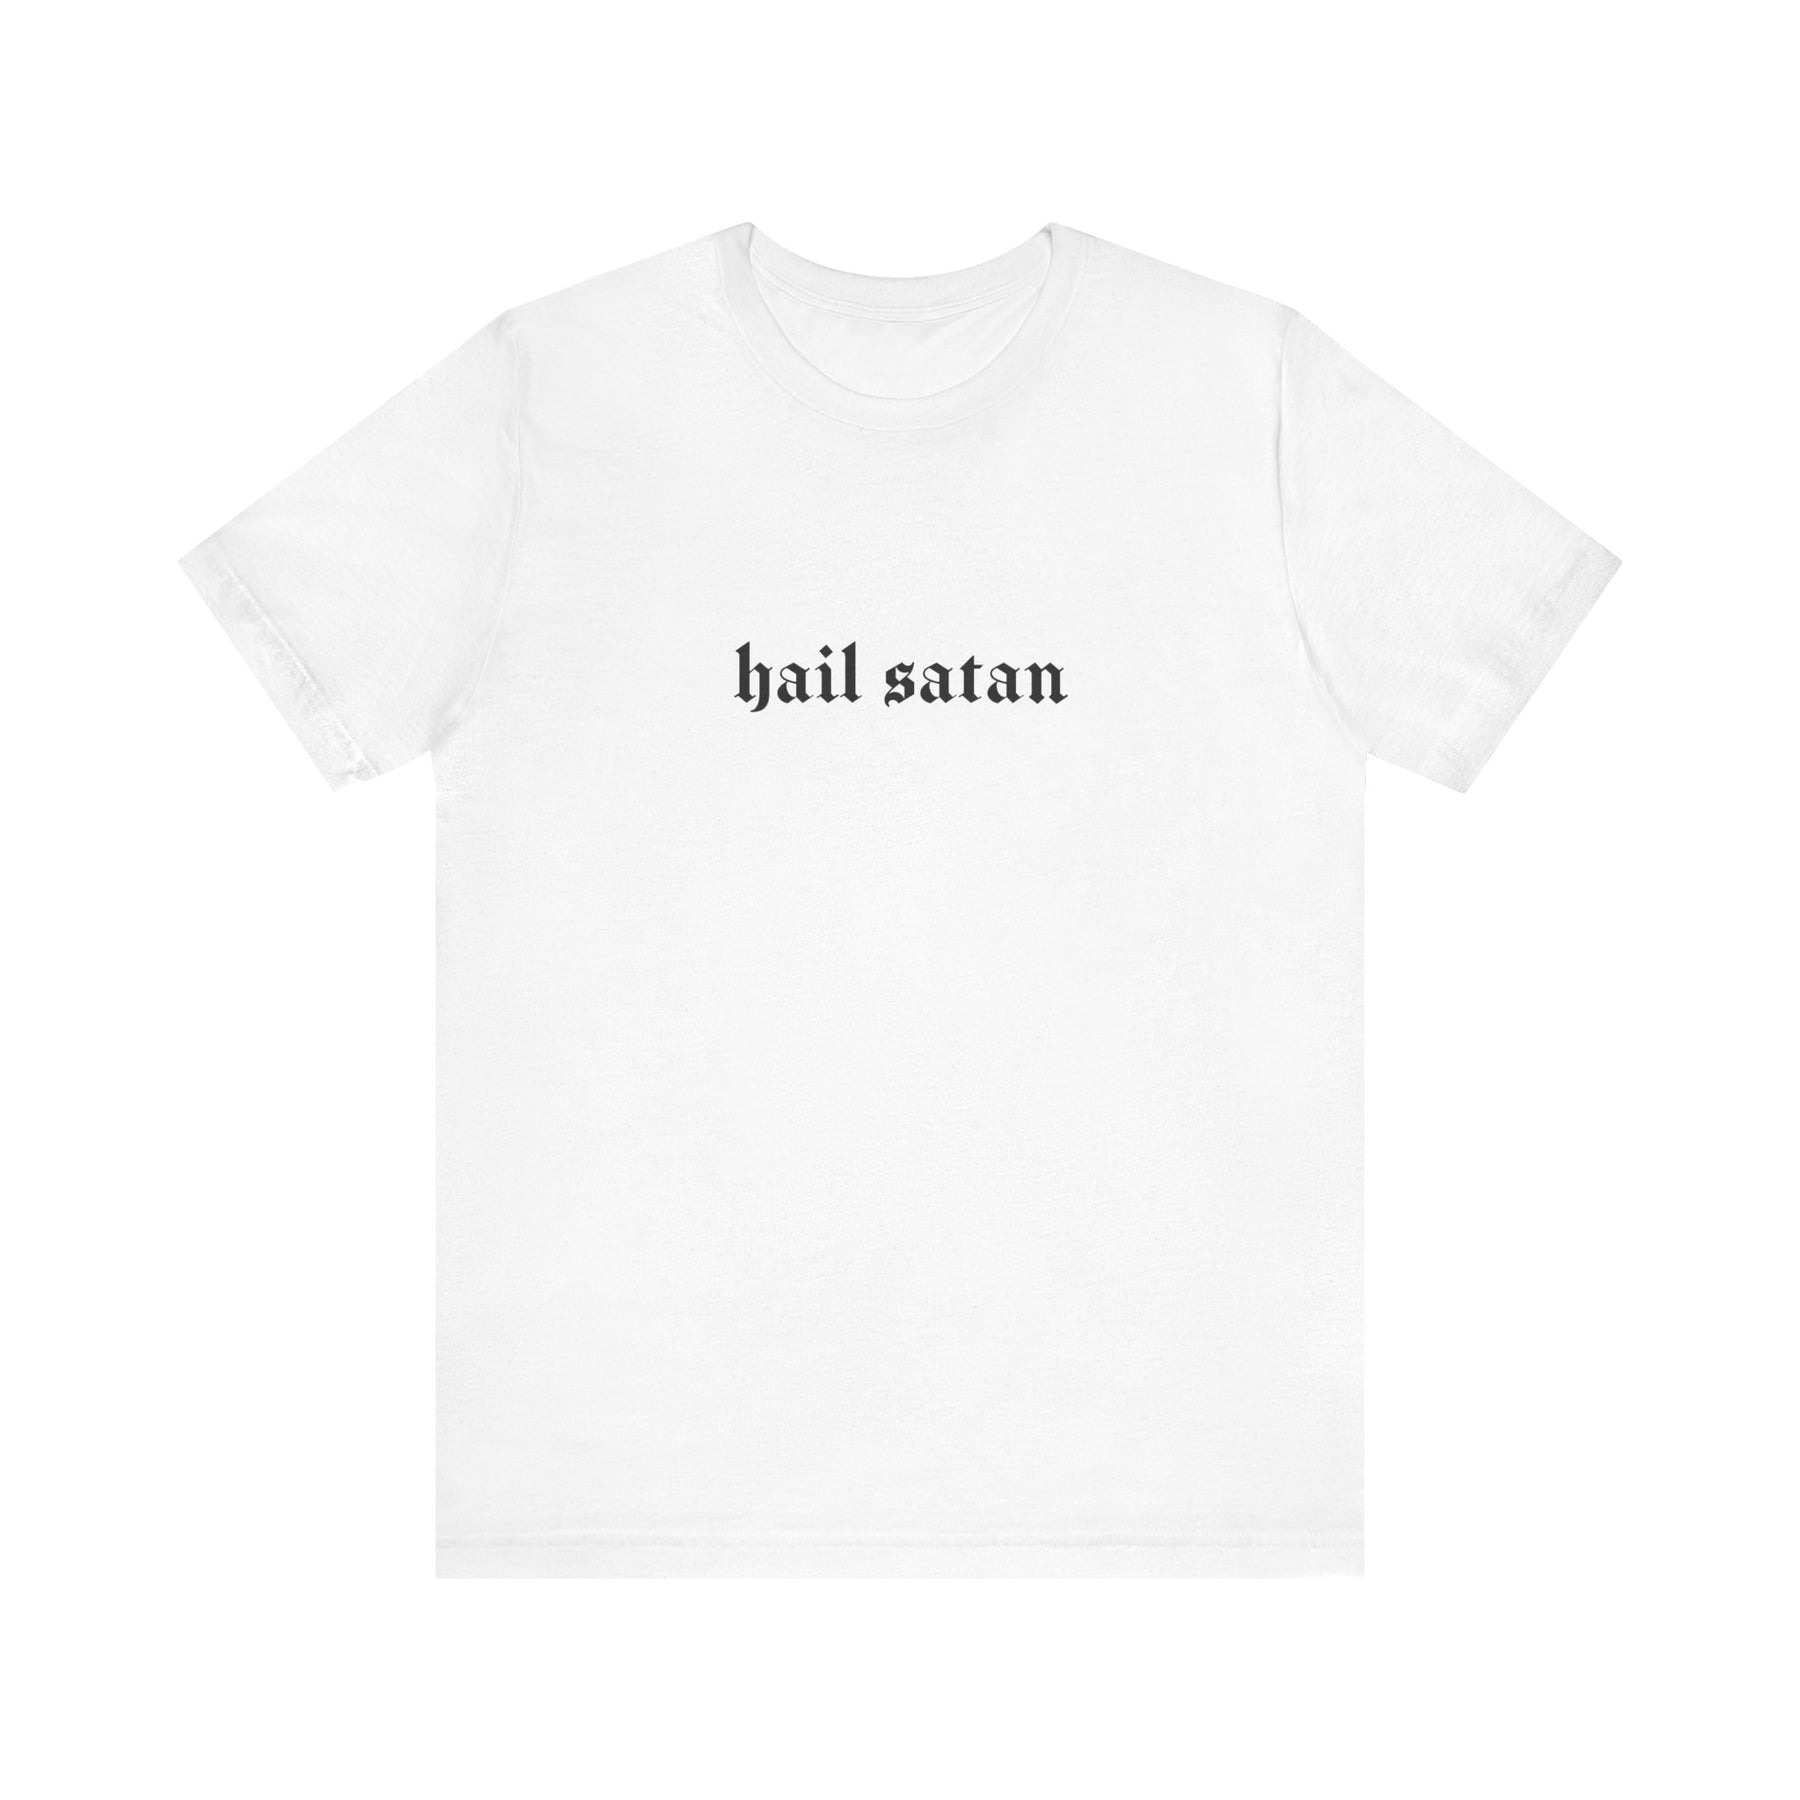 Hail Satan Gothic T - Shirt - Goth Cloth Co.T - Shirt21346140284158911899